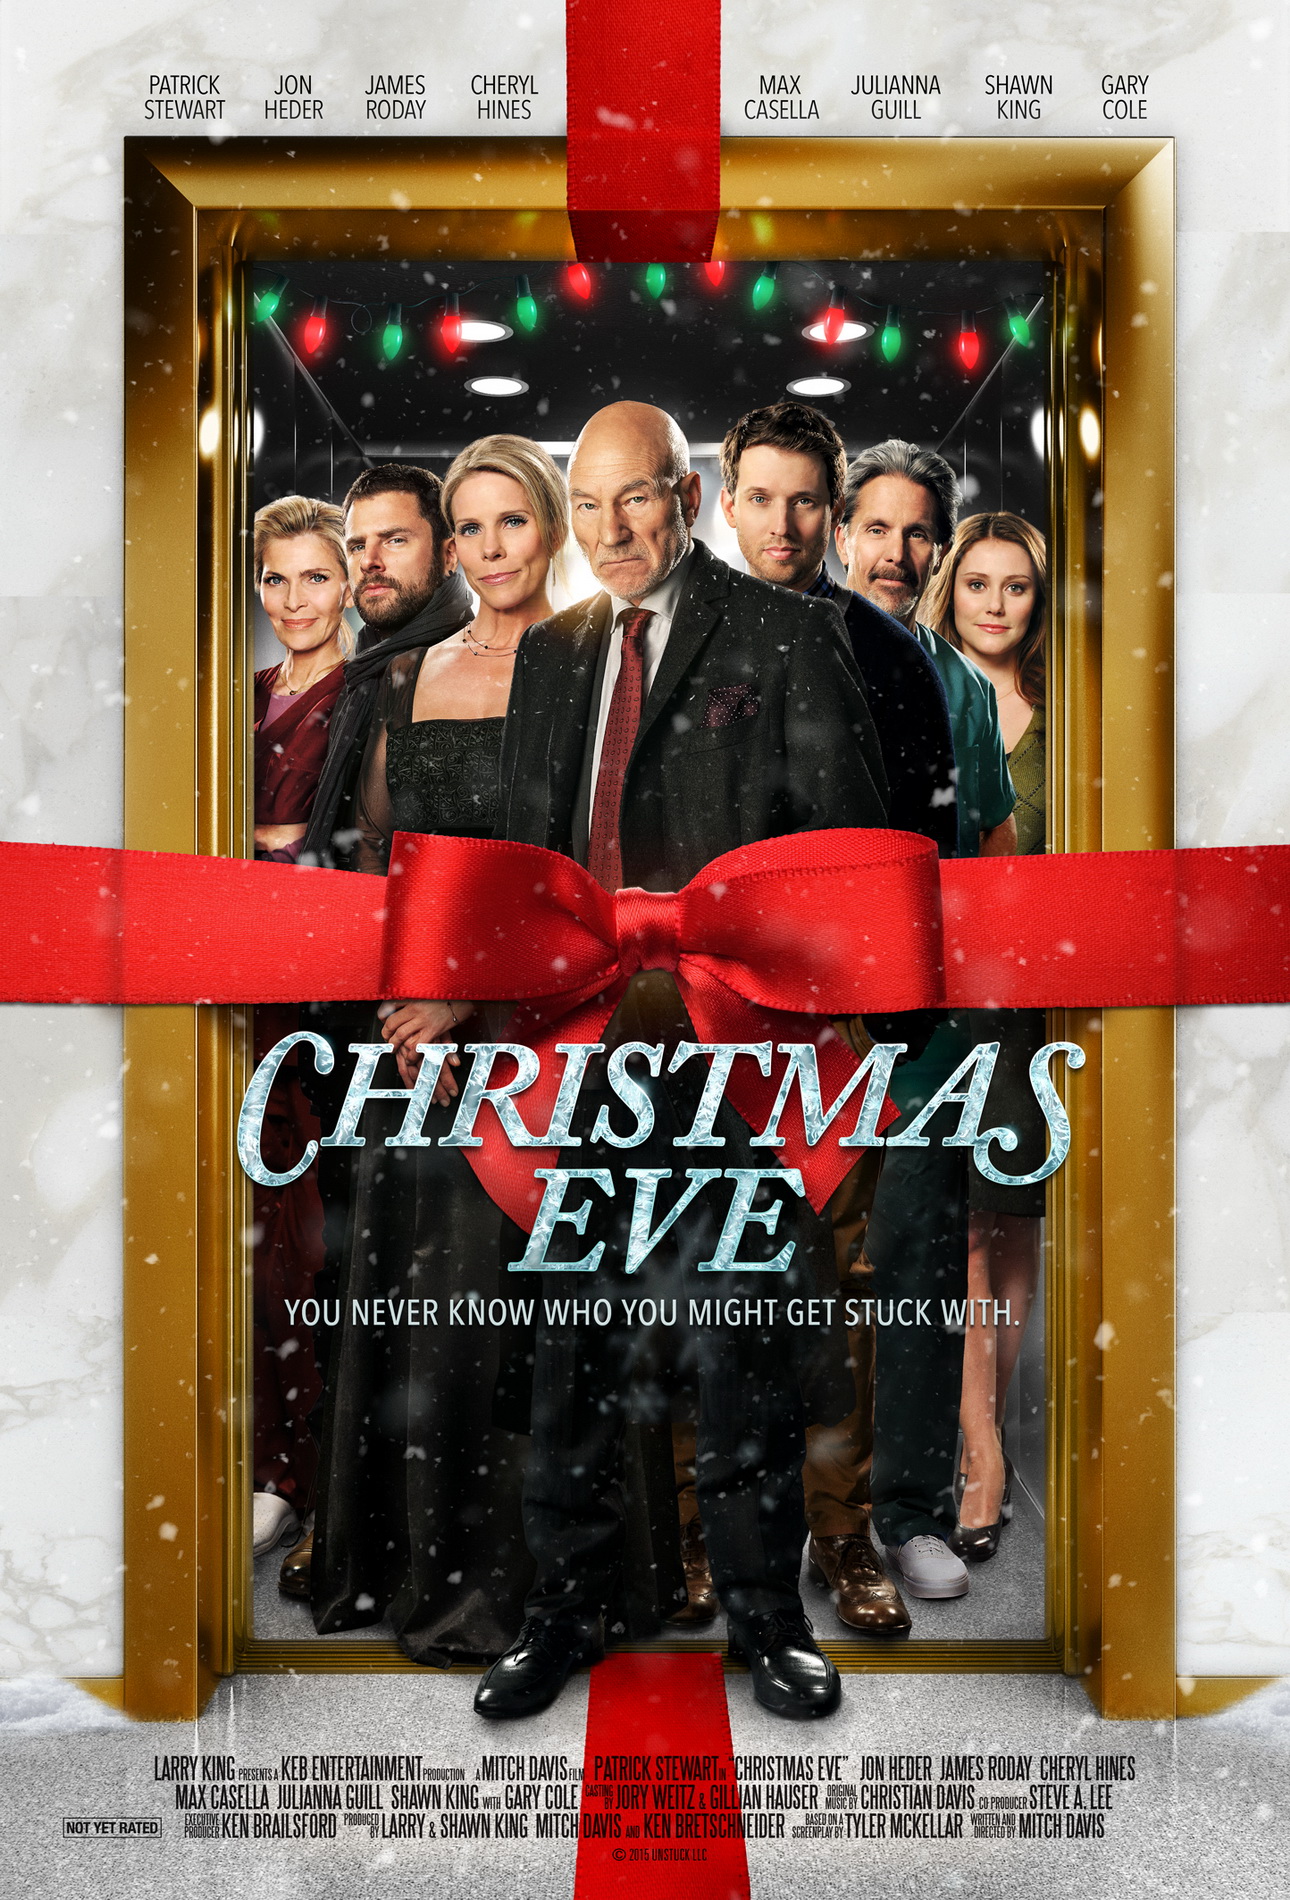 CHRISTMAS EVE Trailer, Poster and Photos FilmoFilia